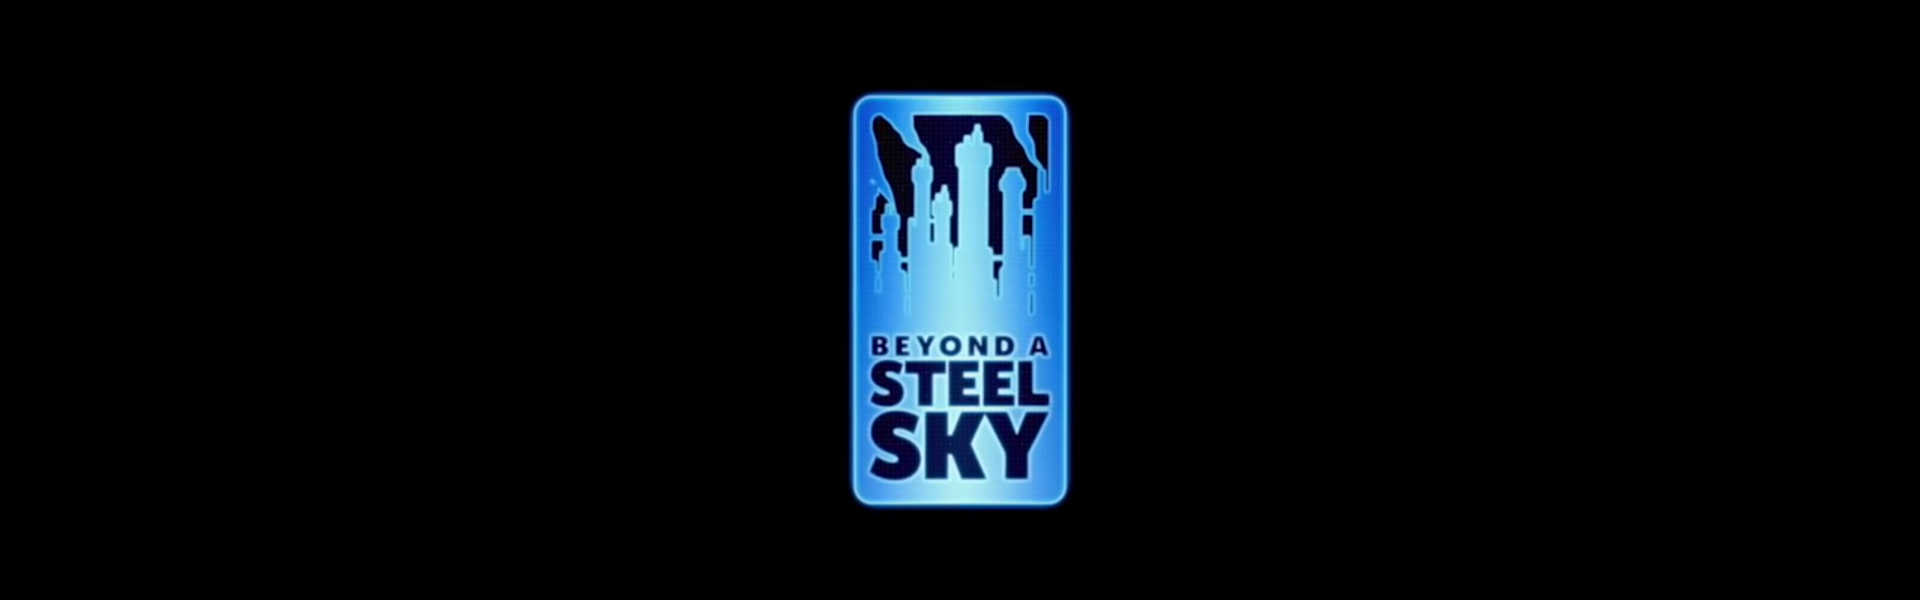 beyond a steel sky trophies